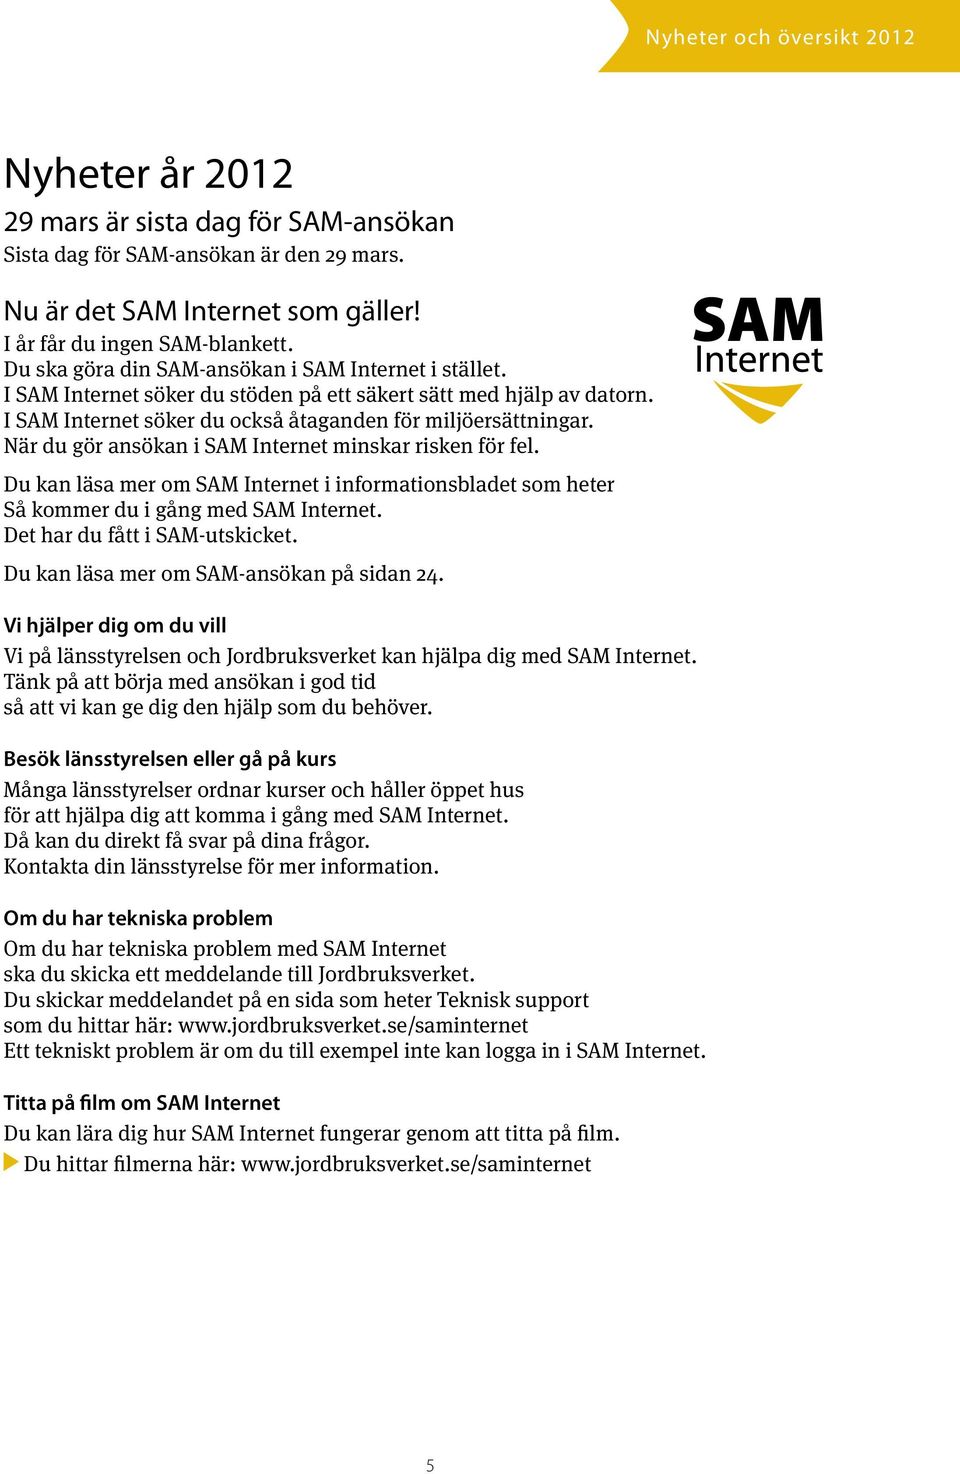 När du gör ansökan i SAM Internet minskar risken för fel. Du kan läsa mer om SAM Internet i informationsbladet som heter Så kommer du i gång med SAM Internet. Det har du fått i SAM-utskicket.